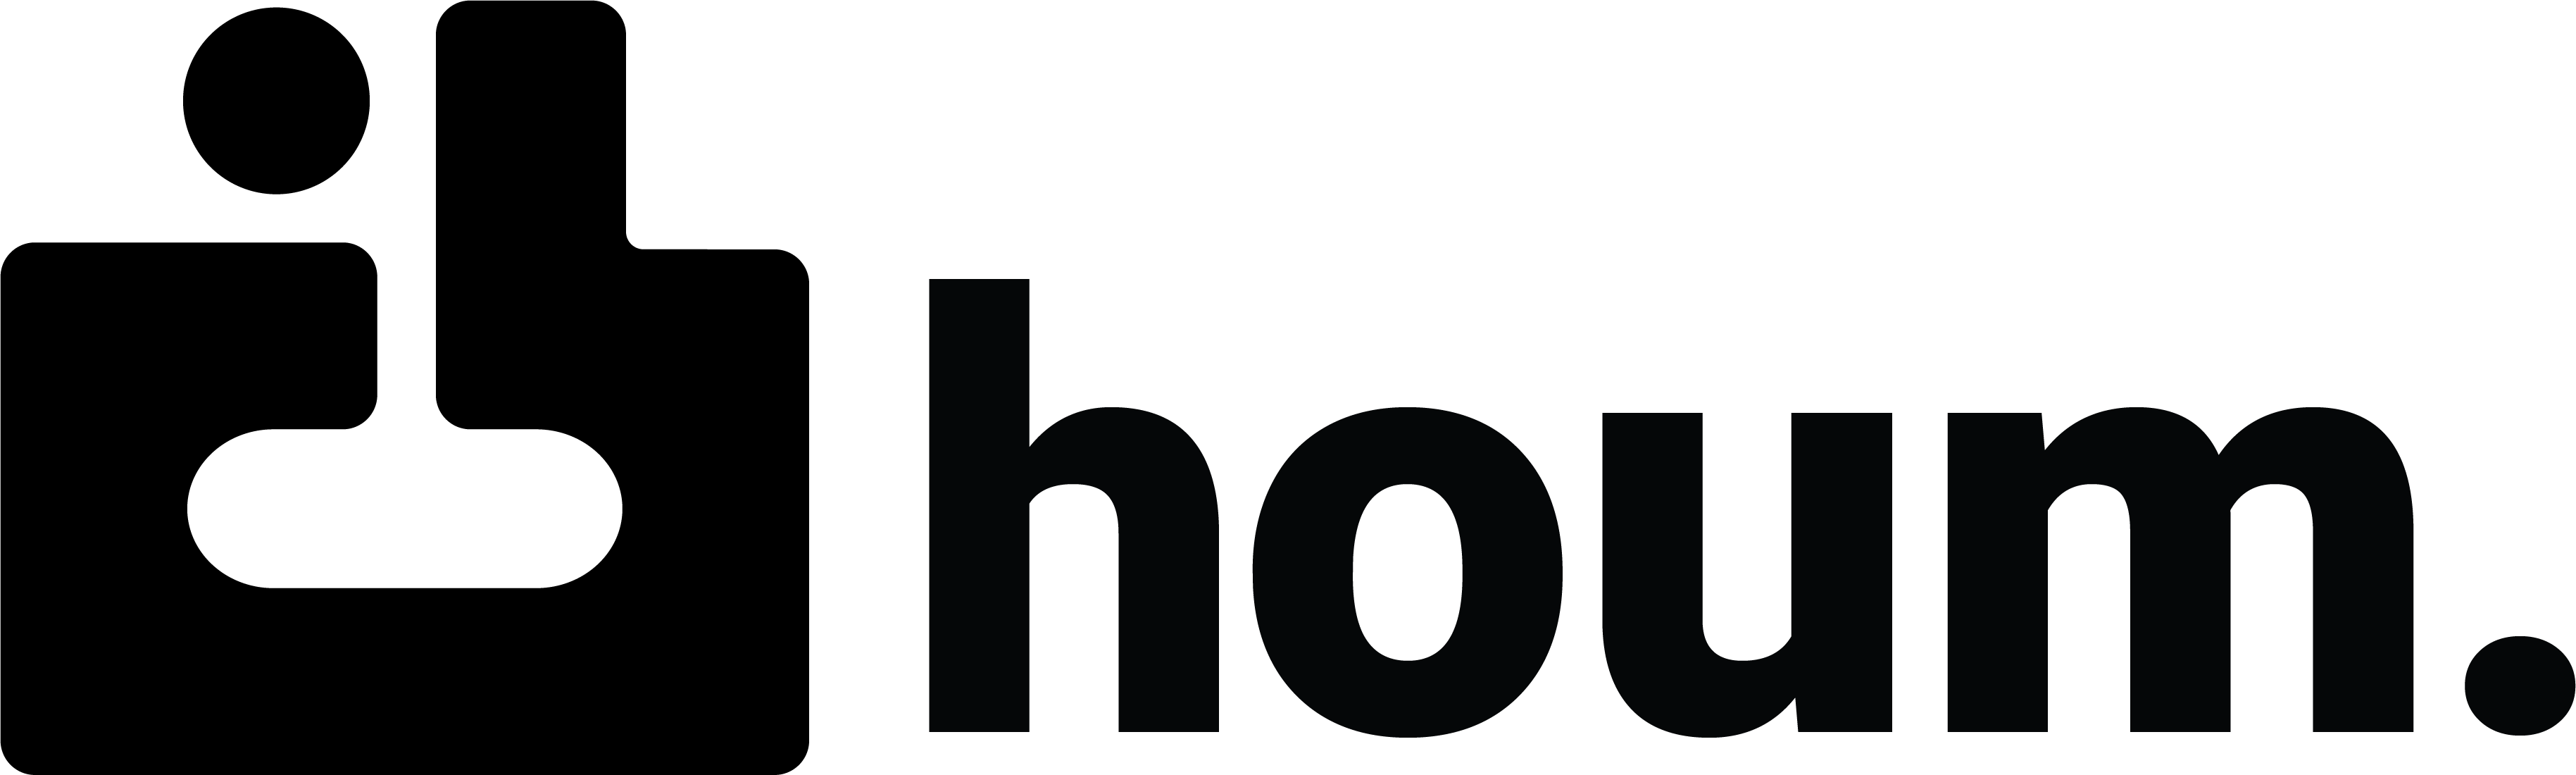 houm Logo - Navbar